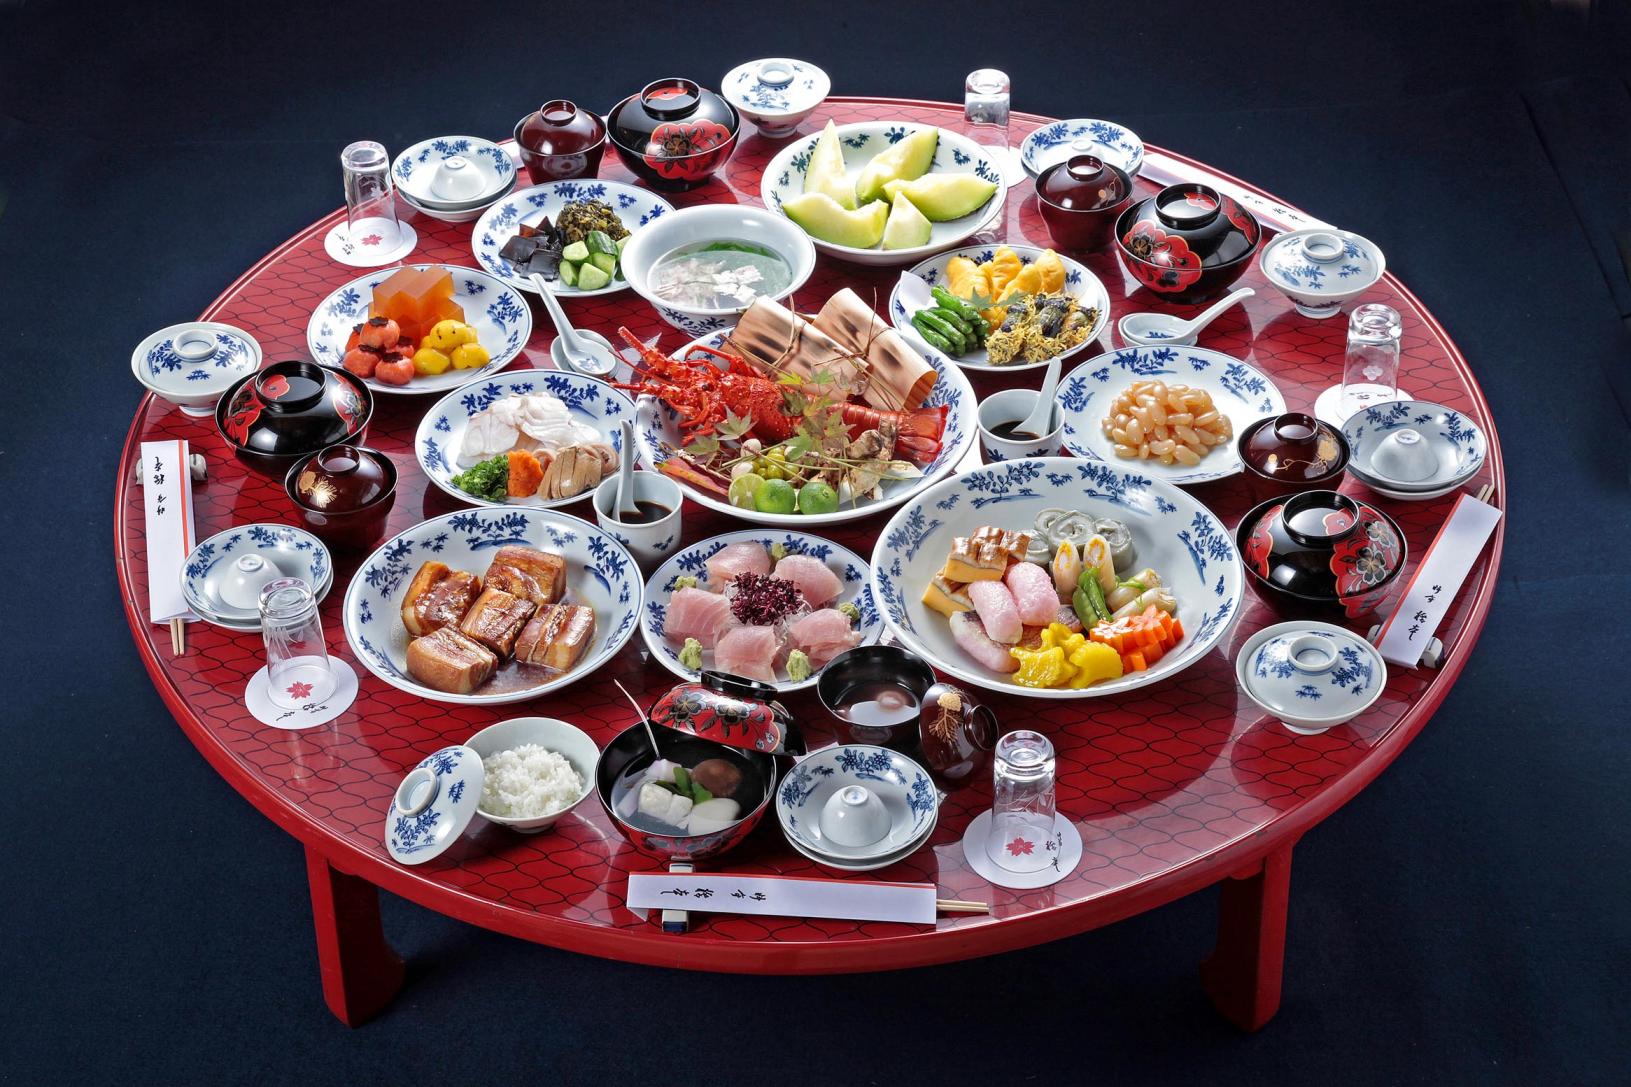 可以感受长崎历史和文化的传统美食-0